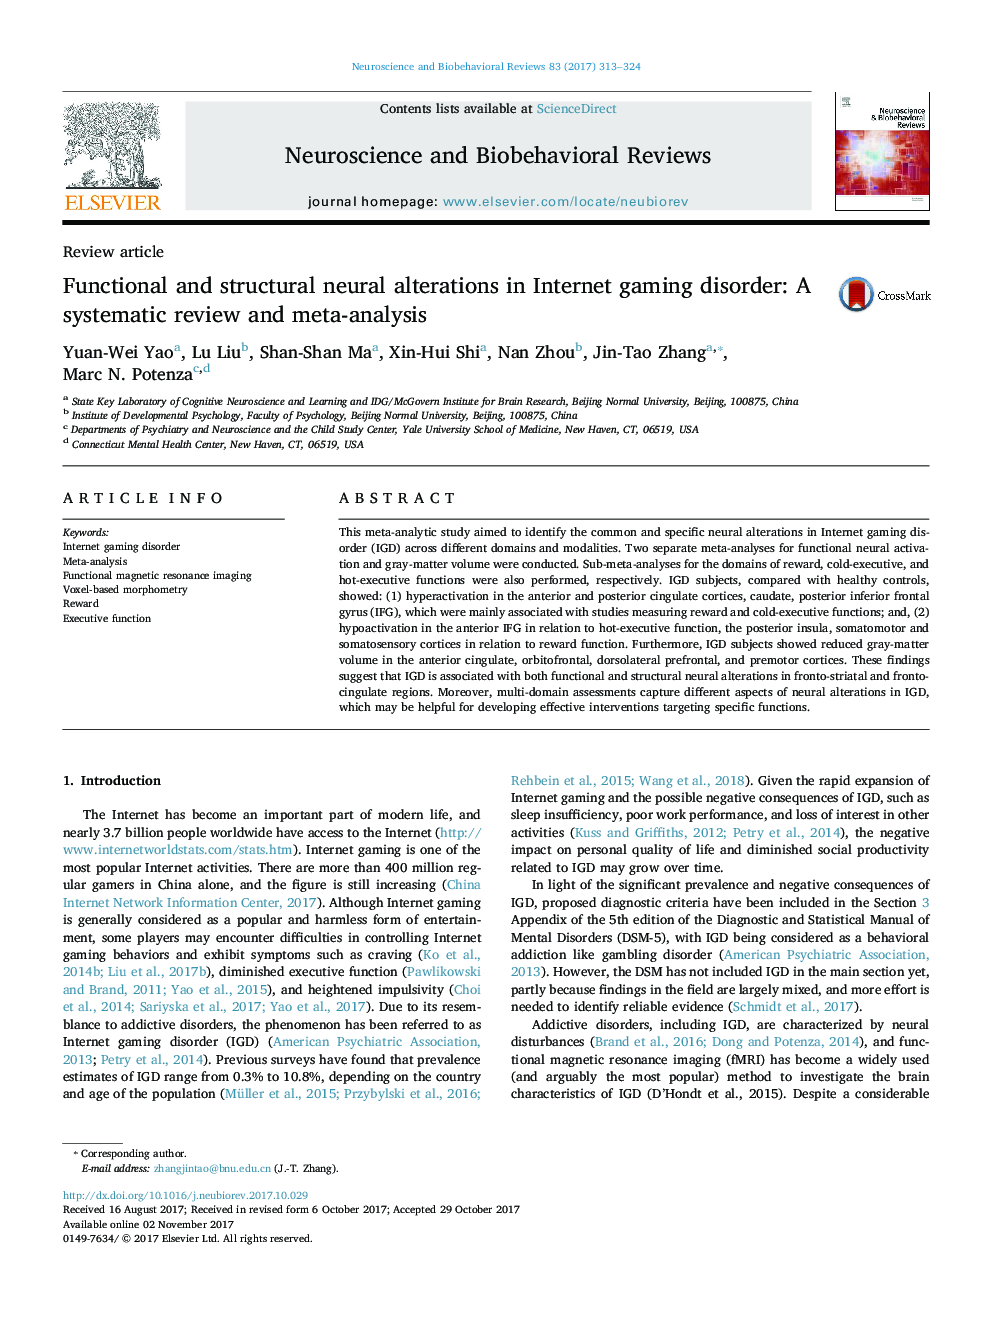 تغییرات عملکردی و ساختاری عصبی در اختلال بازی های اینترنتی: بررسی منظم و متا آنالیز 